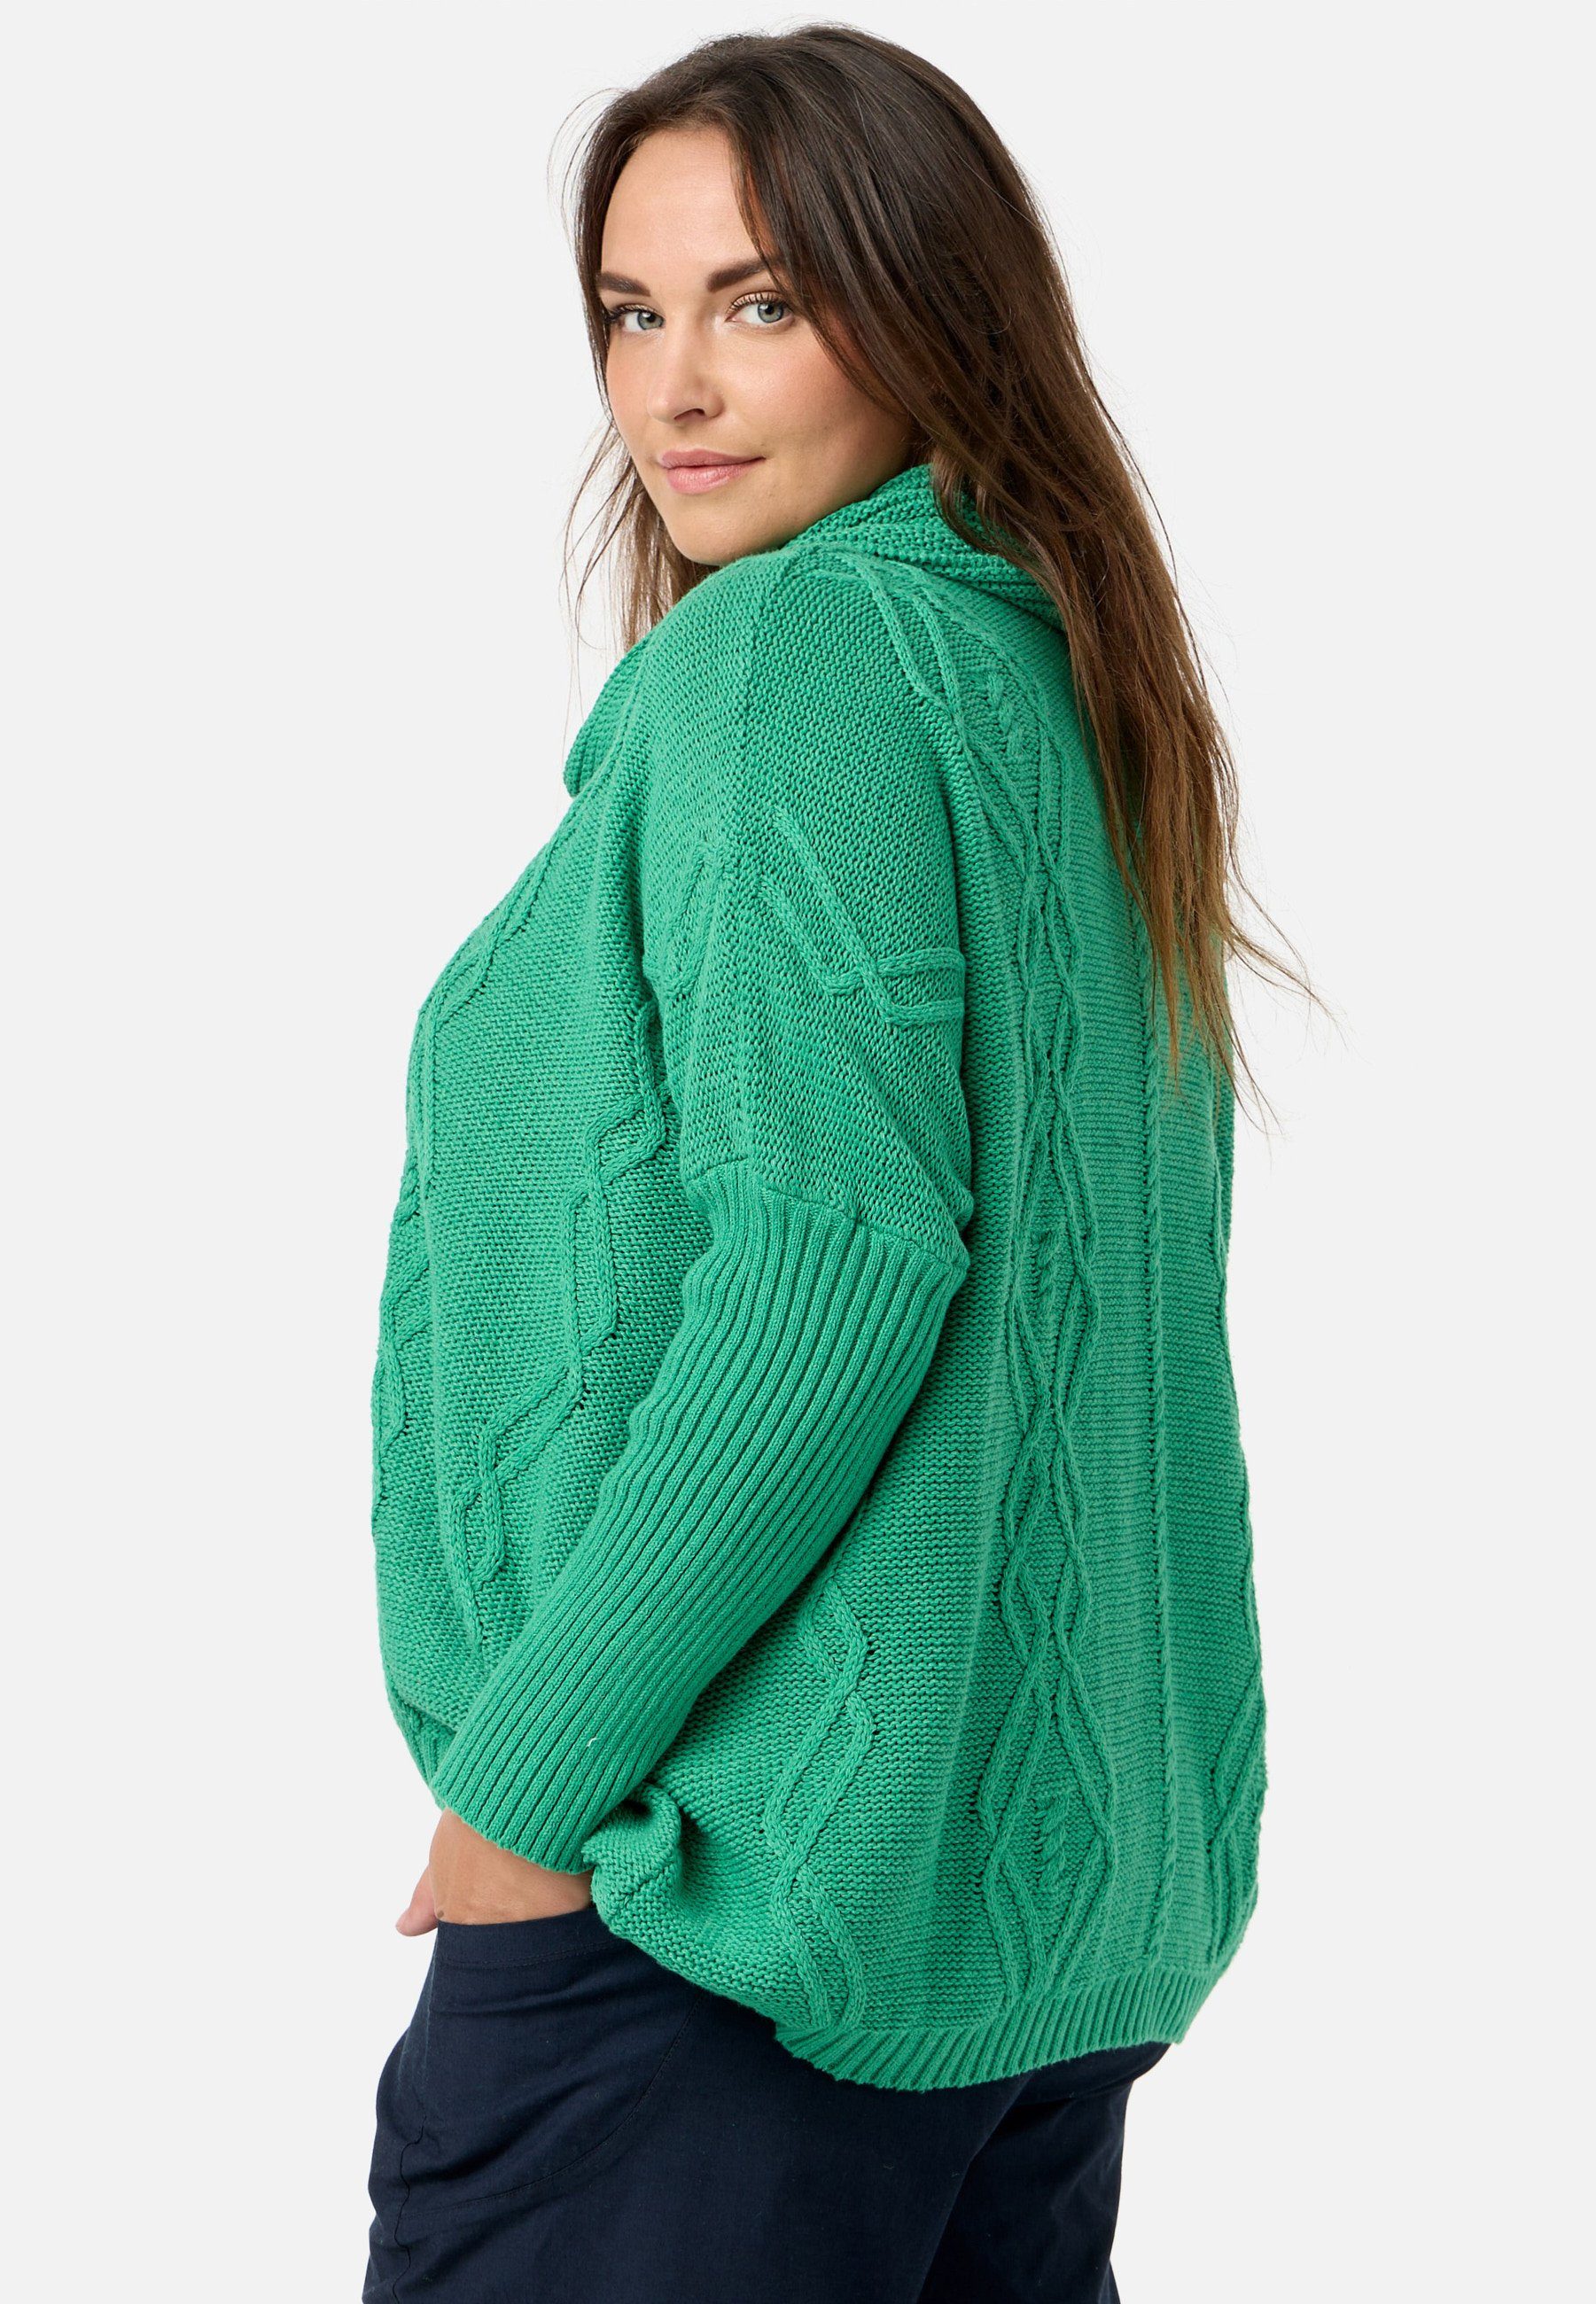 Kekoo Strickpullover Strick 100% 'Pure' Baumwolle aus mit Schalkragen Poncho-Shirt Smaragd